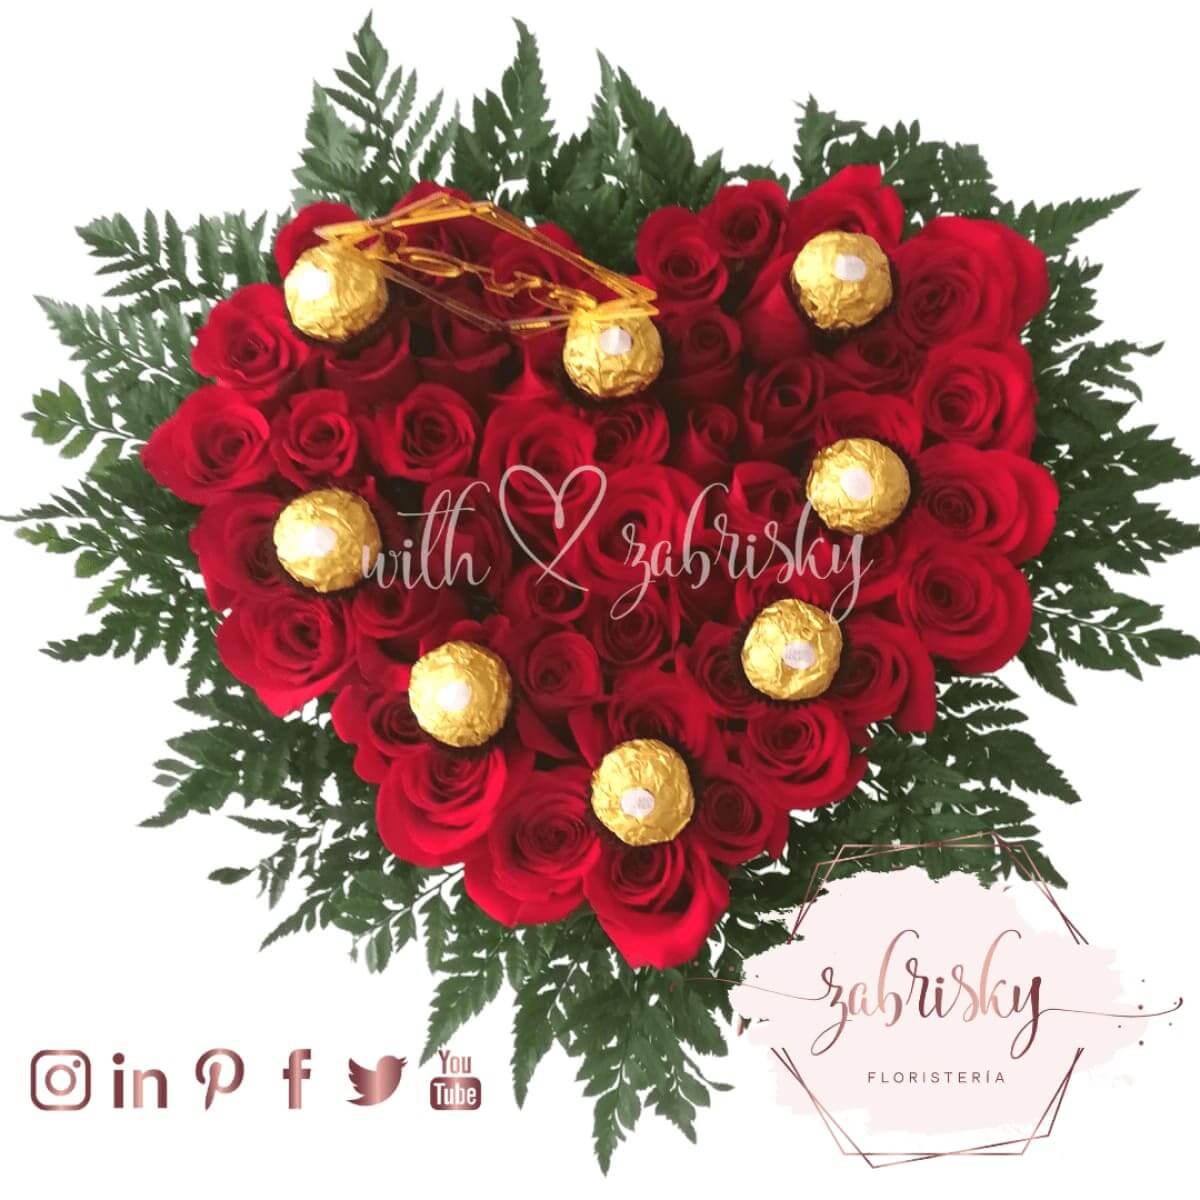 Corazón Rosas y Chocolates - Floristería Zabrisky